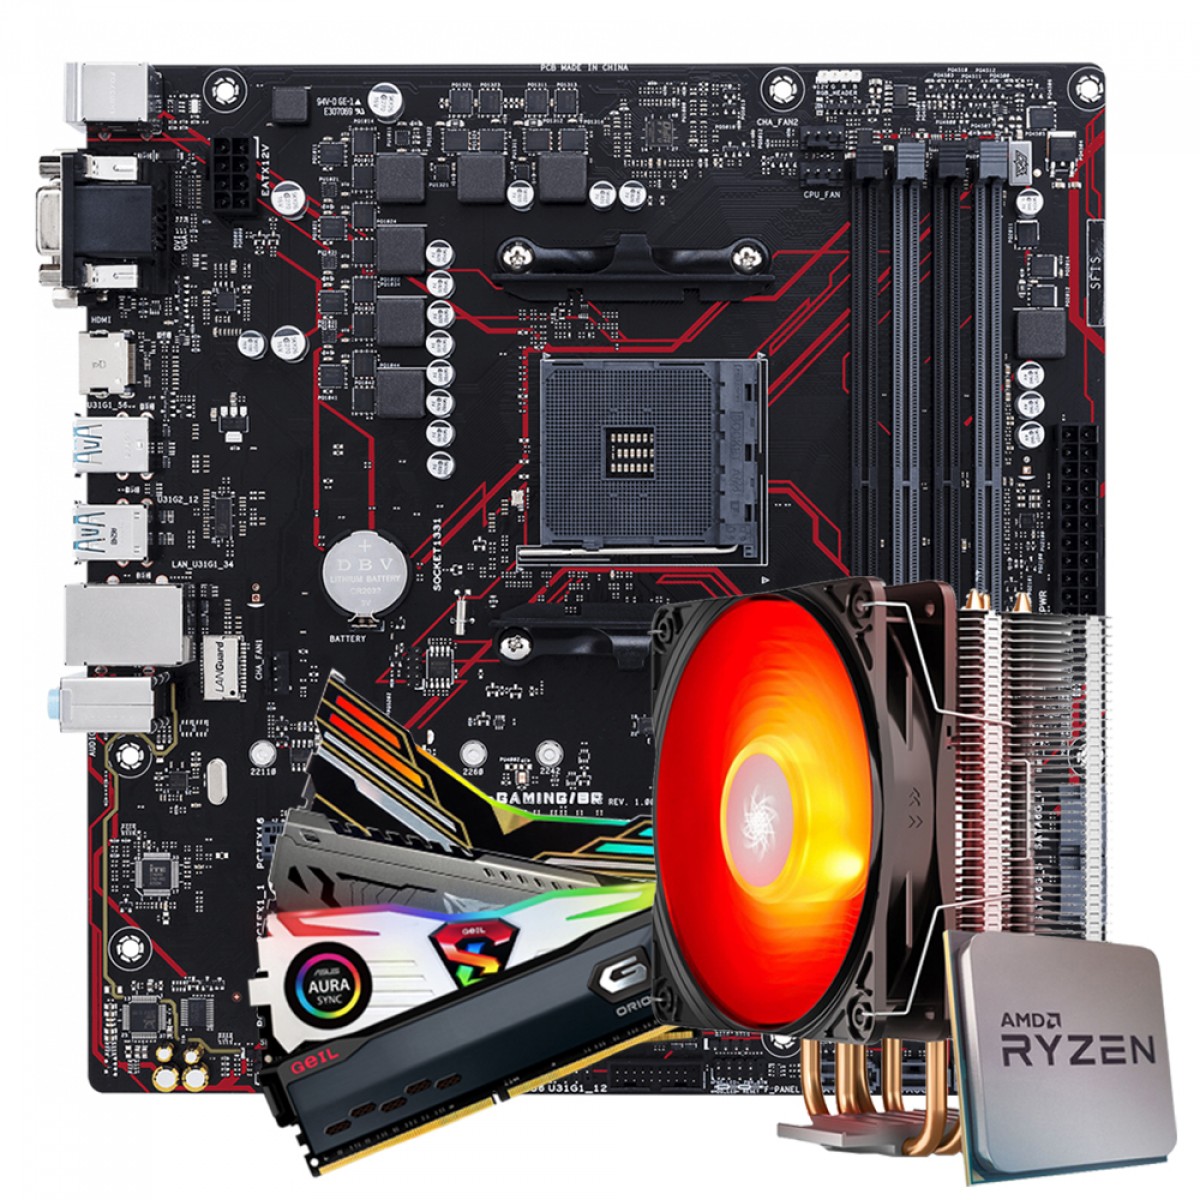 Kit Upgrade Asus Prime B450M Gaming/BR + AMD Ryzen 7 3700x + 16GB (2X8GB) DDR4